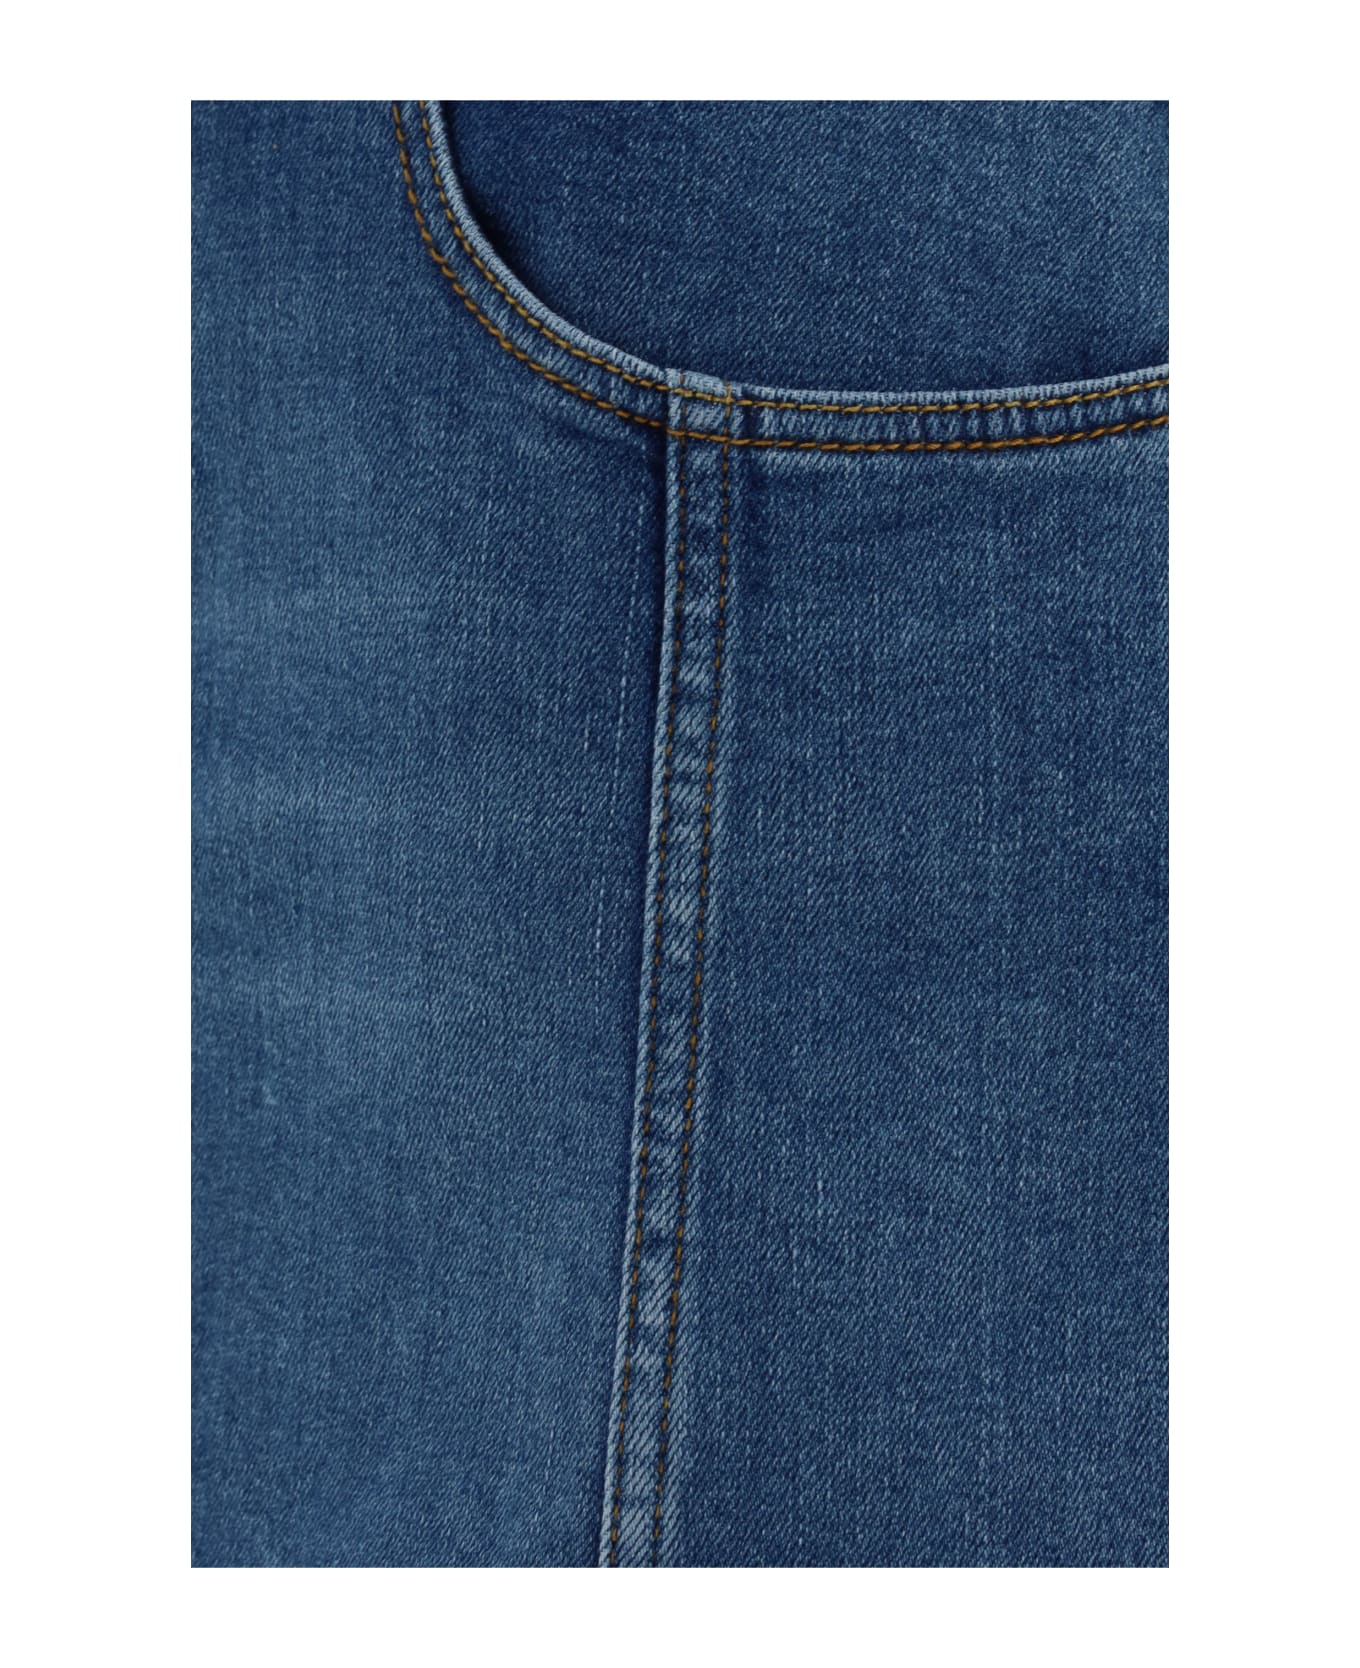 Alexander McQueen Asymmetric Tri Pocket Short Denim Skirt - Blu スカート